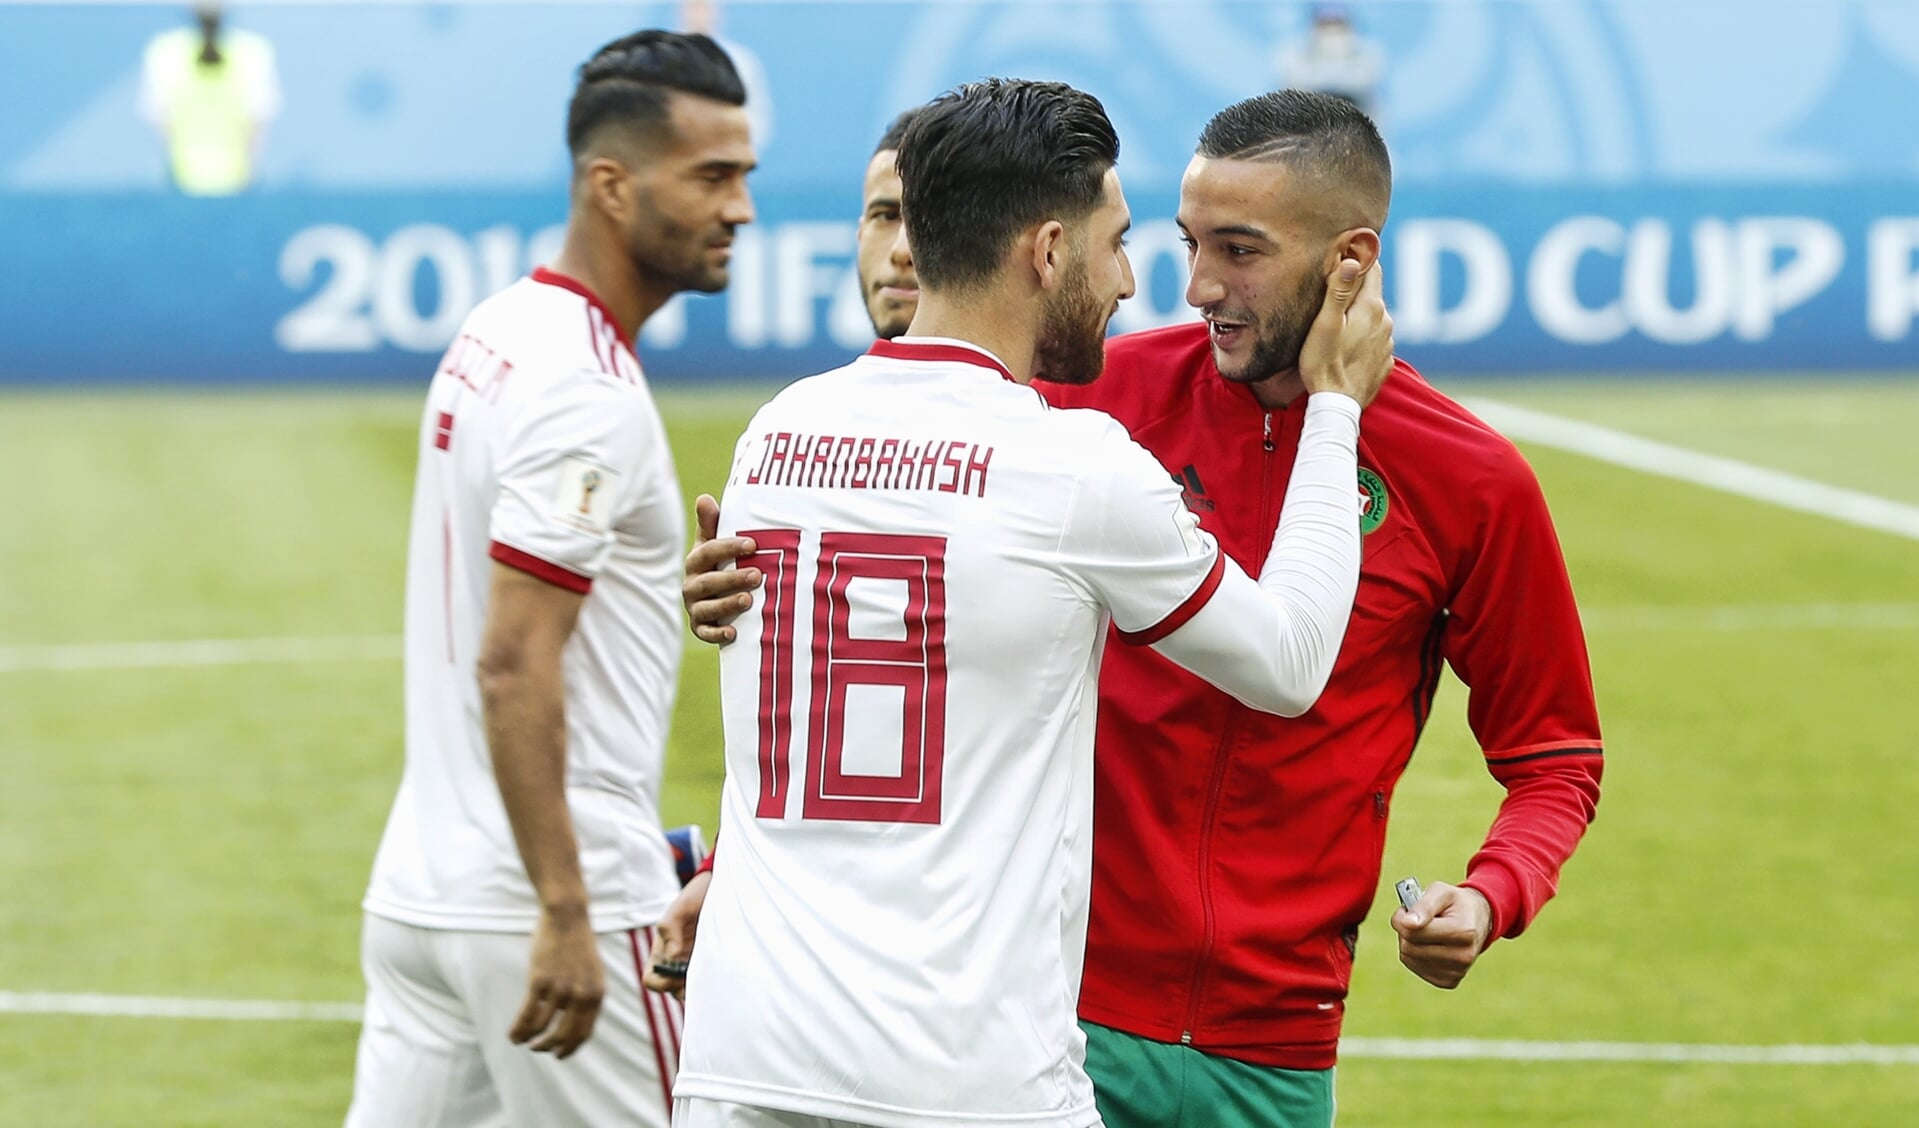 Middenvelder Hakim Ziyech (R) van Marokko begroet aanvaller Alireza Jahanbakhsh (L) van Iran voorafgaand aan de WK wedstrijd Marokko tegen Iran.